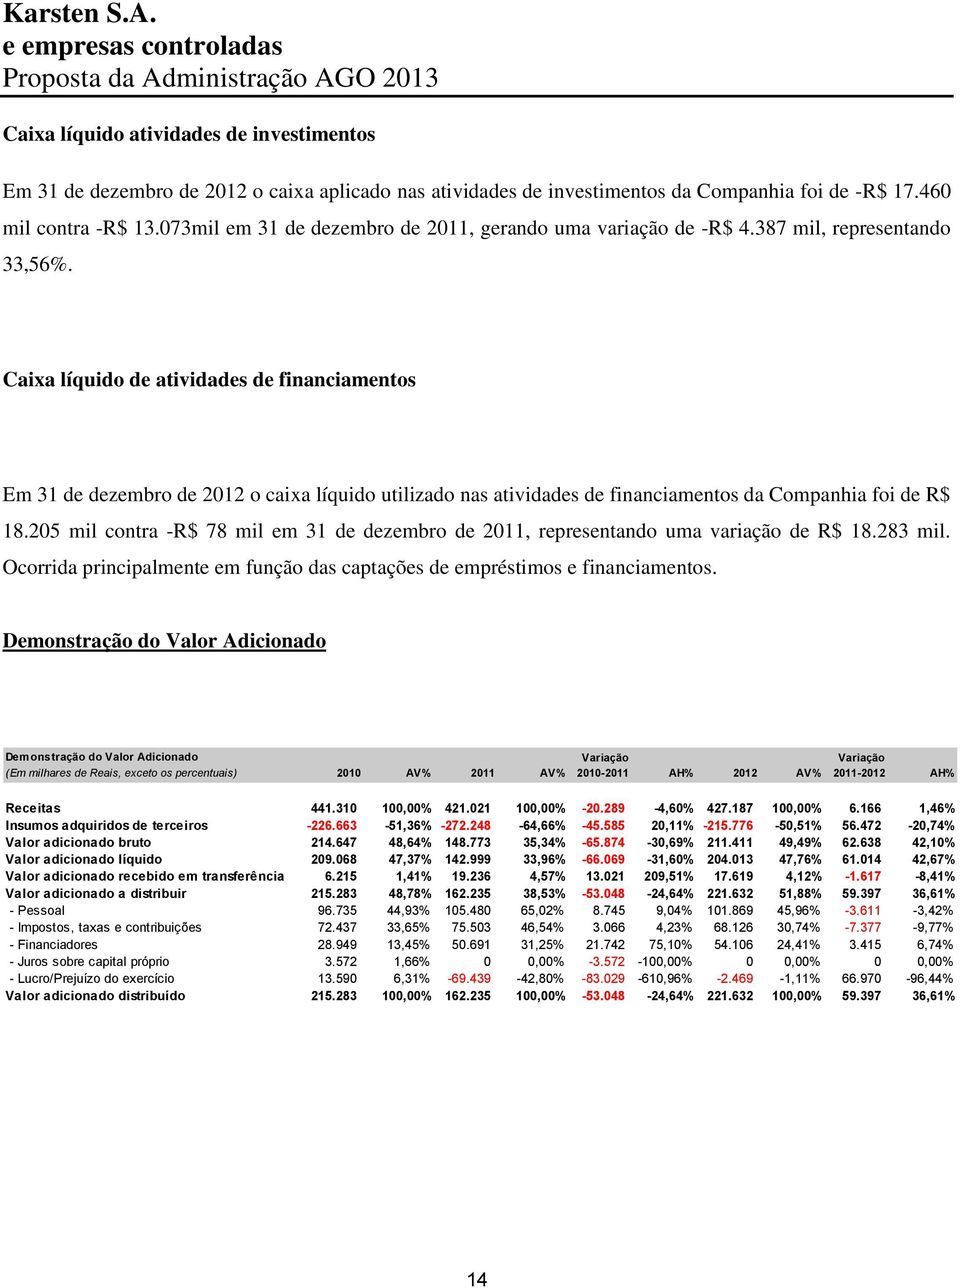 Caixa líquido de atividades de financiamentos Em 31 de dezembro de 2012 o caixa líquido utilizado nas atividades de financiamentos da Companhia foi de R$ 18.